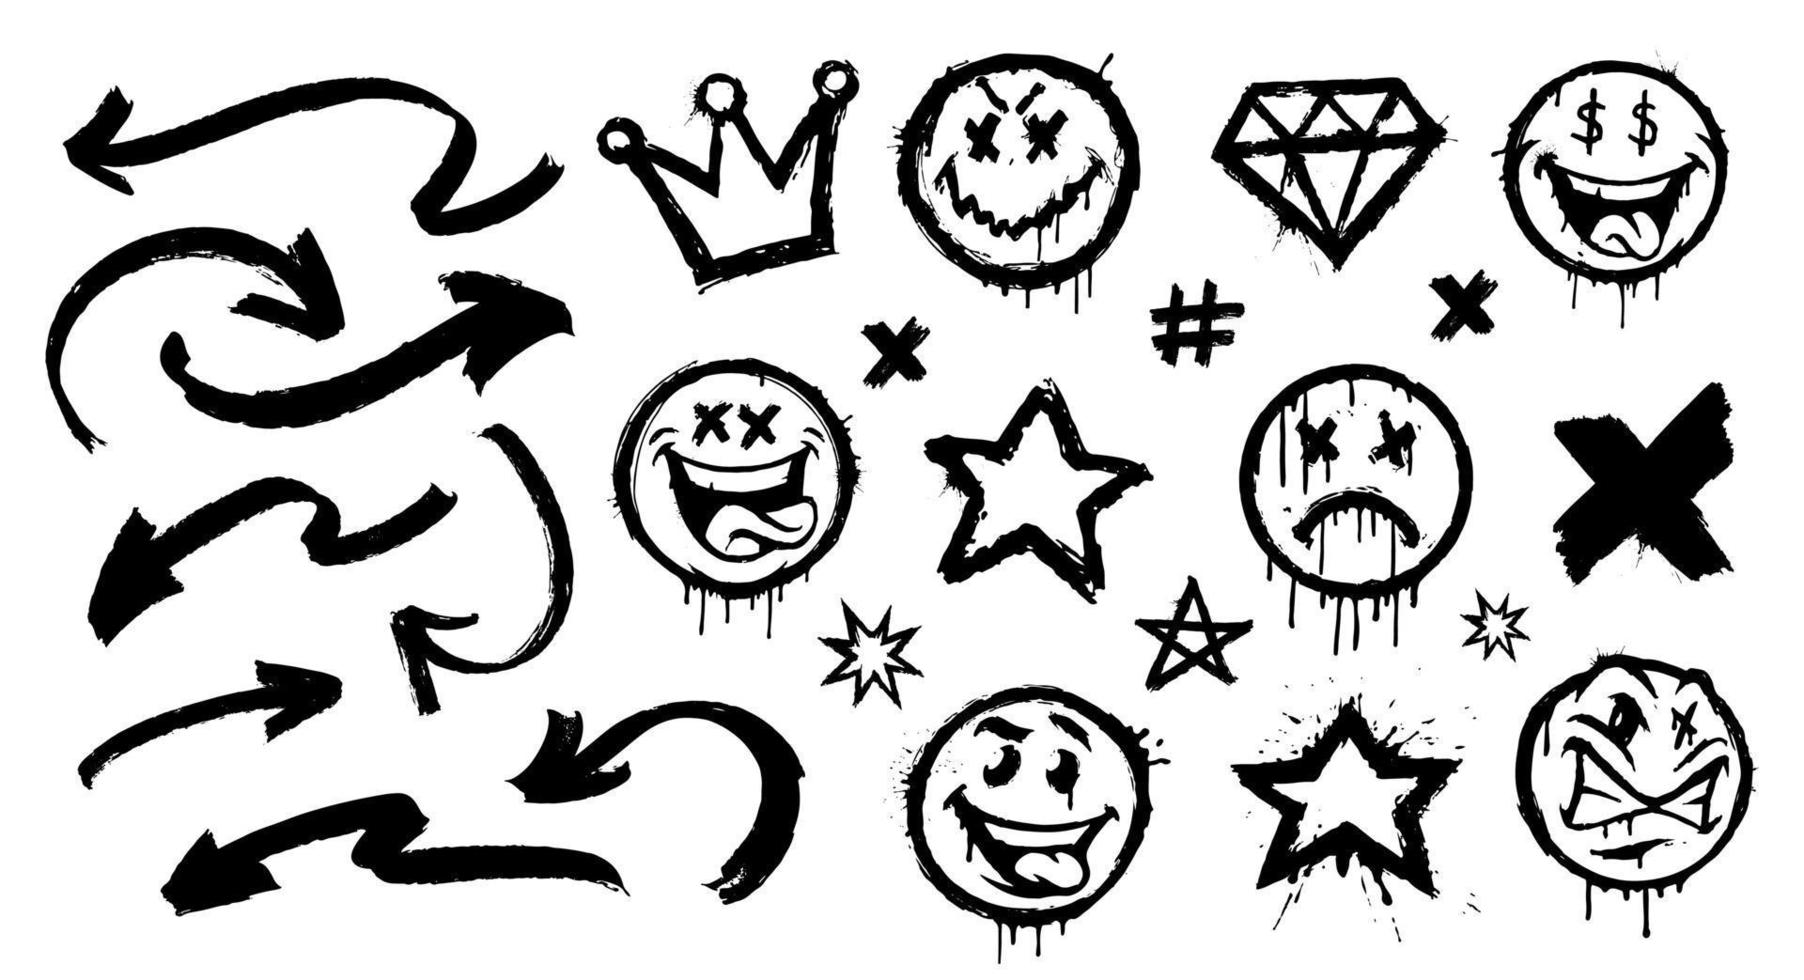 Satz von Vektor-Graffiti-Sprühmustern wie Lächeln, Tag, Emoji vektor